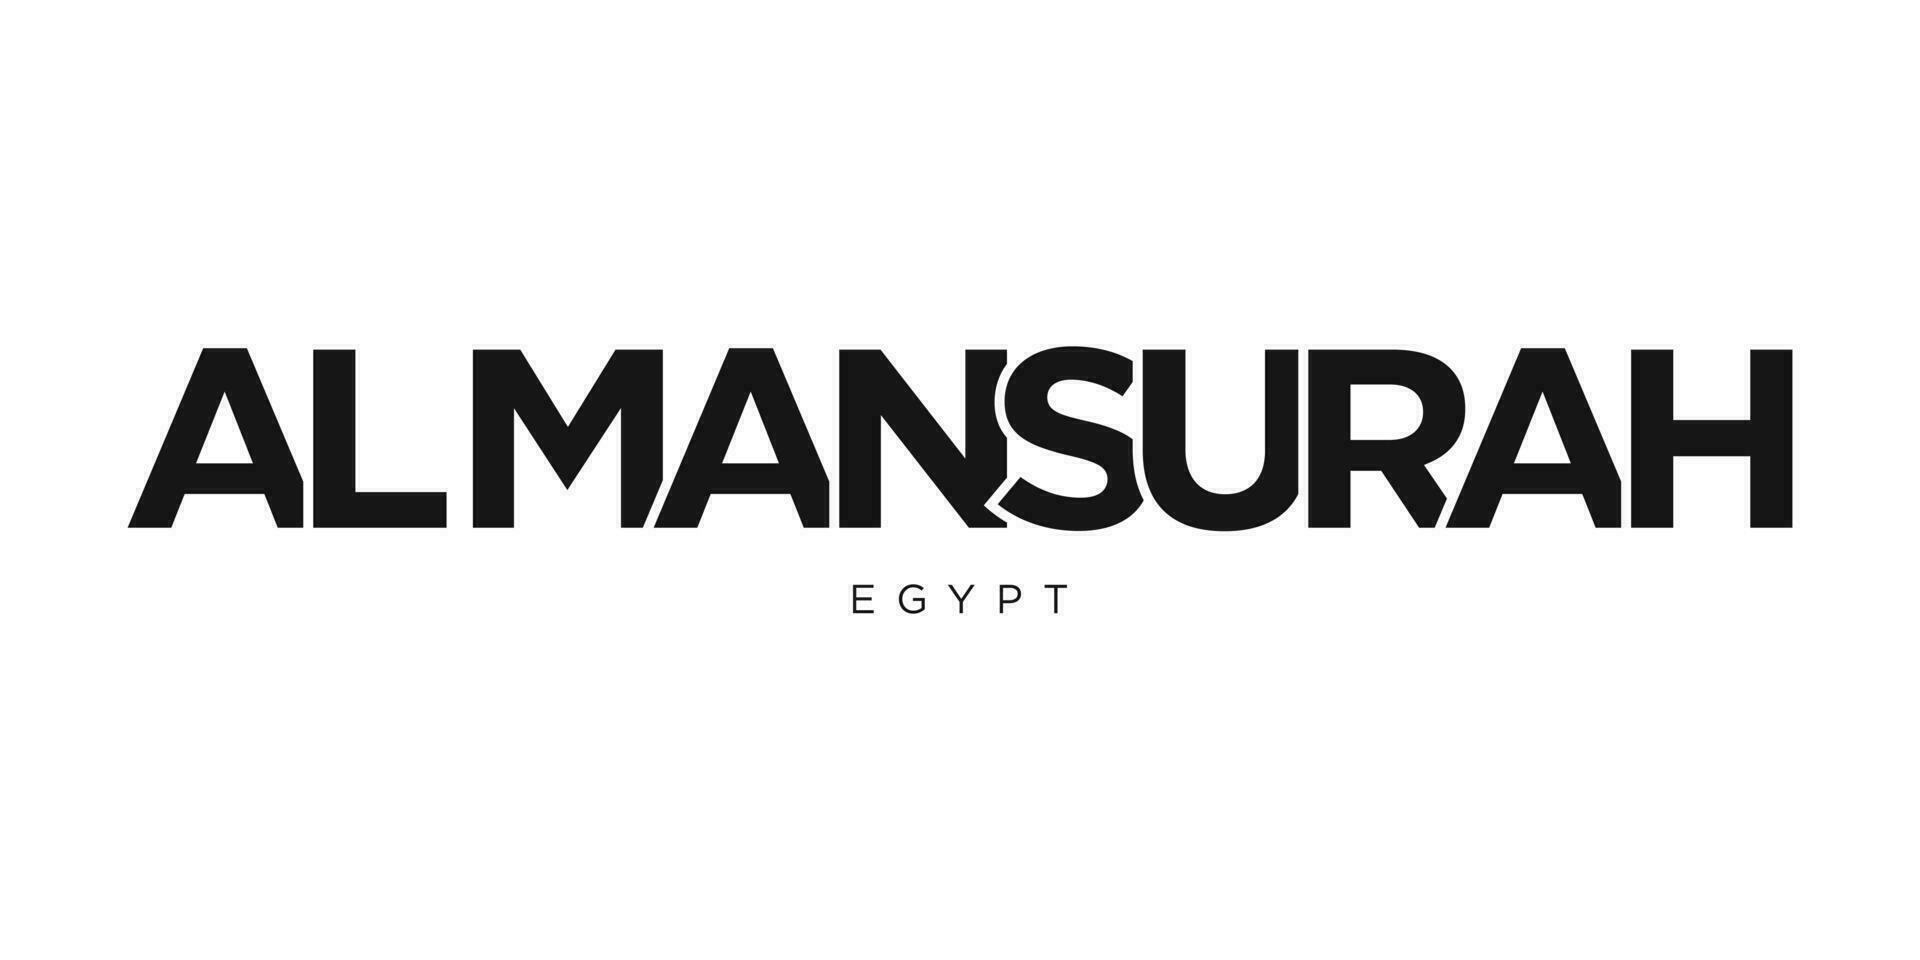 al mansurah i de egypten emblem. de design funktioner en geometrisk stil, vektor illustration med djärv typografi i en modern font. de grafisk slogan text.